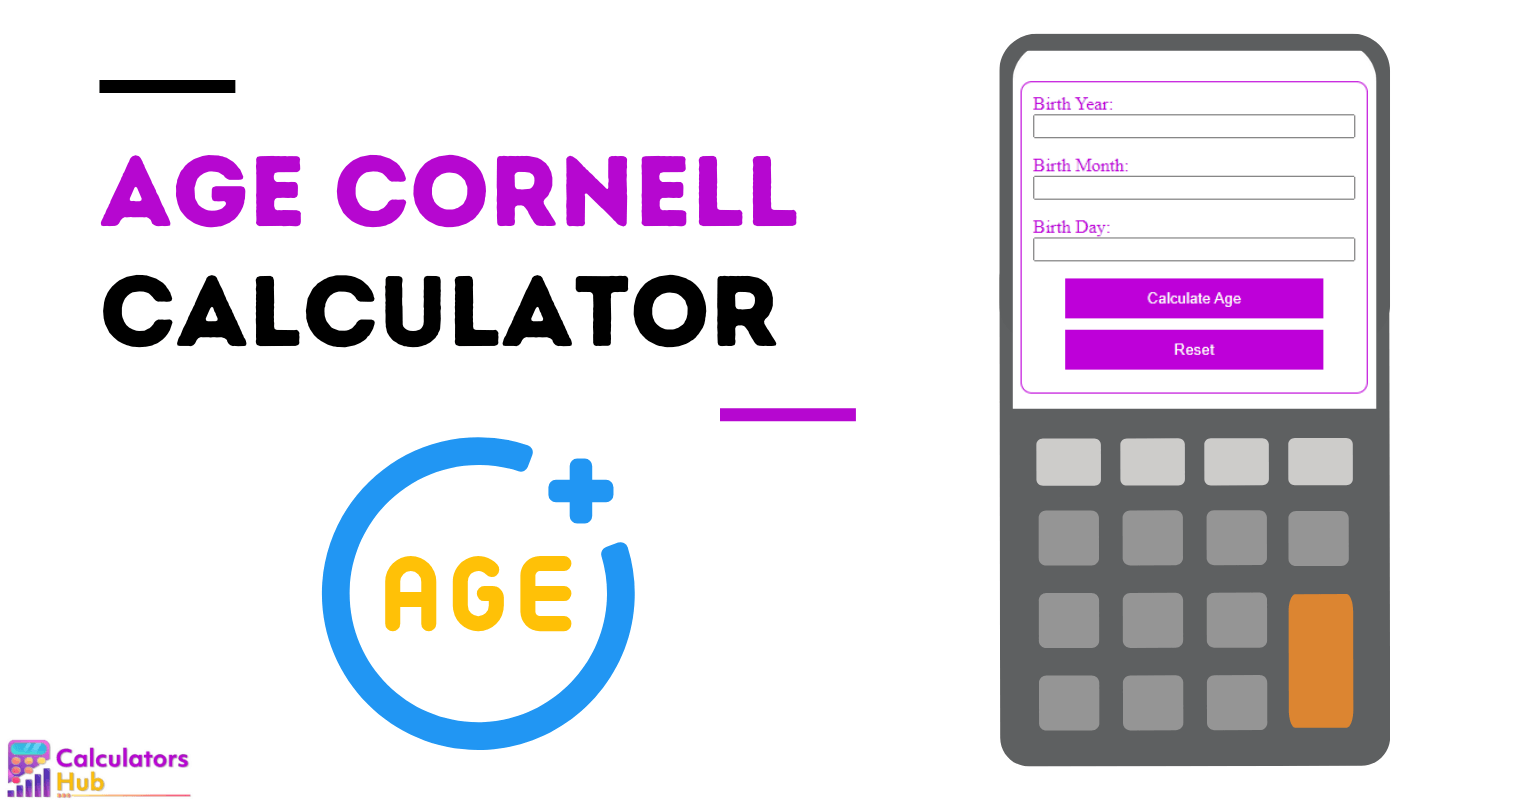 Age Calculator Cornell